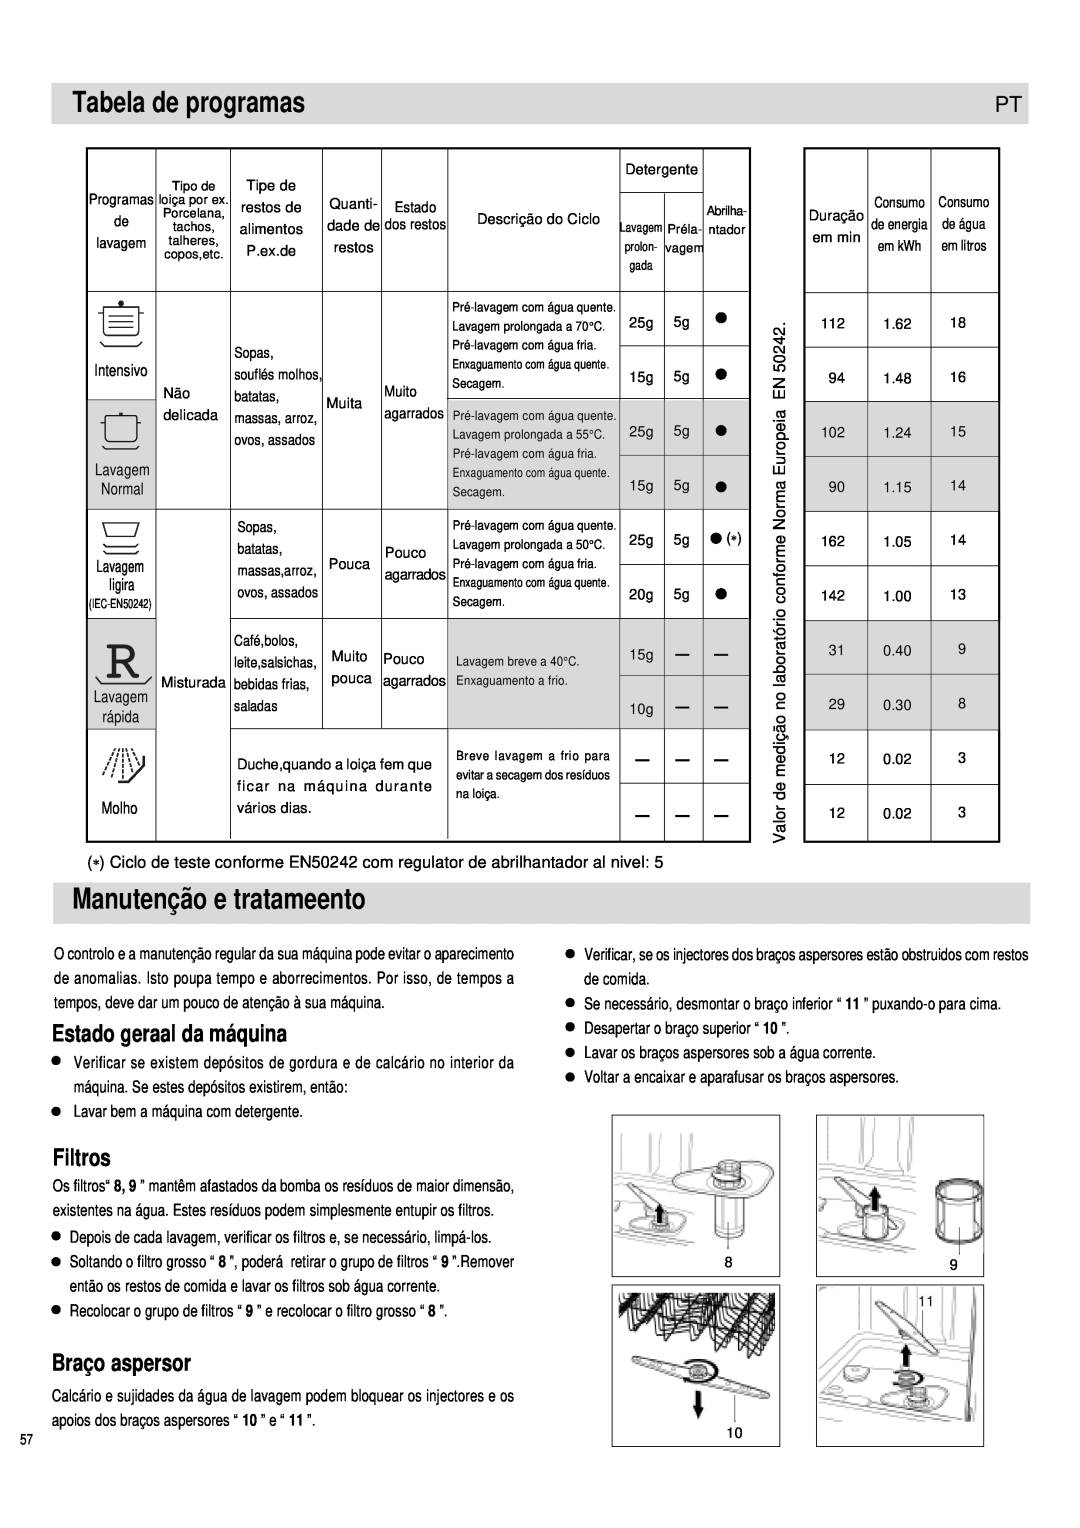 Haier DW12-PFE1 ME manual Tabela de programas, Manutenção e tratameento, Estado geraal da máquina, Braço aspersor, Filtros 